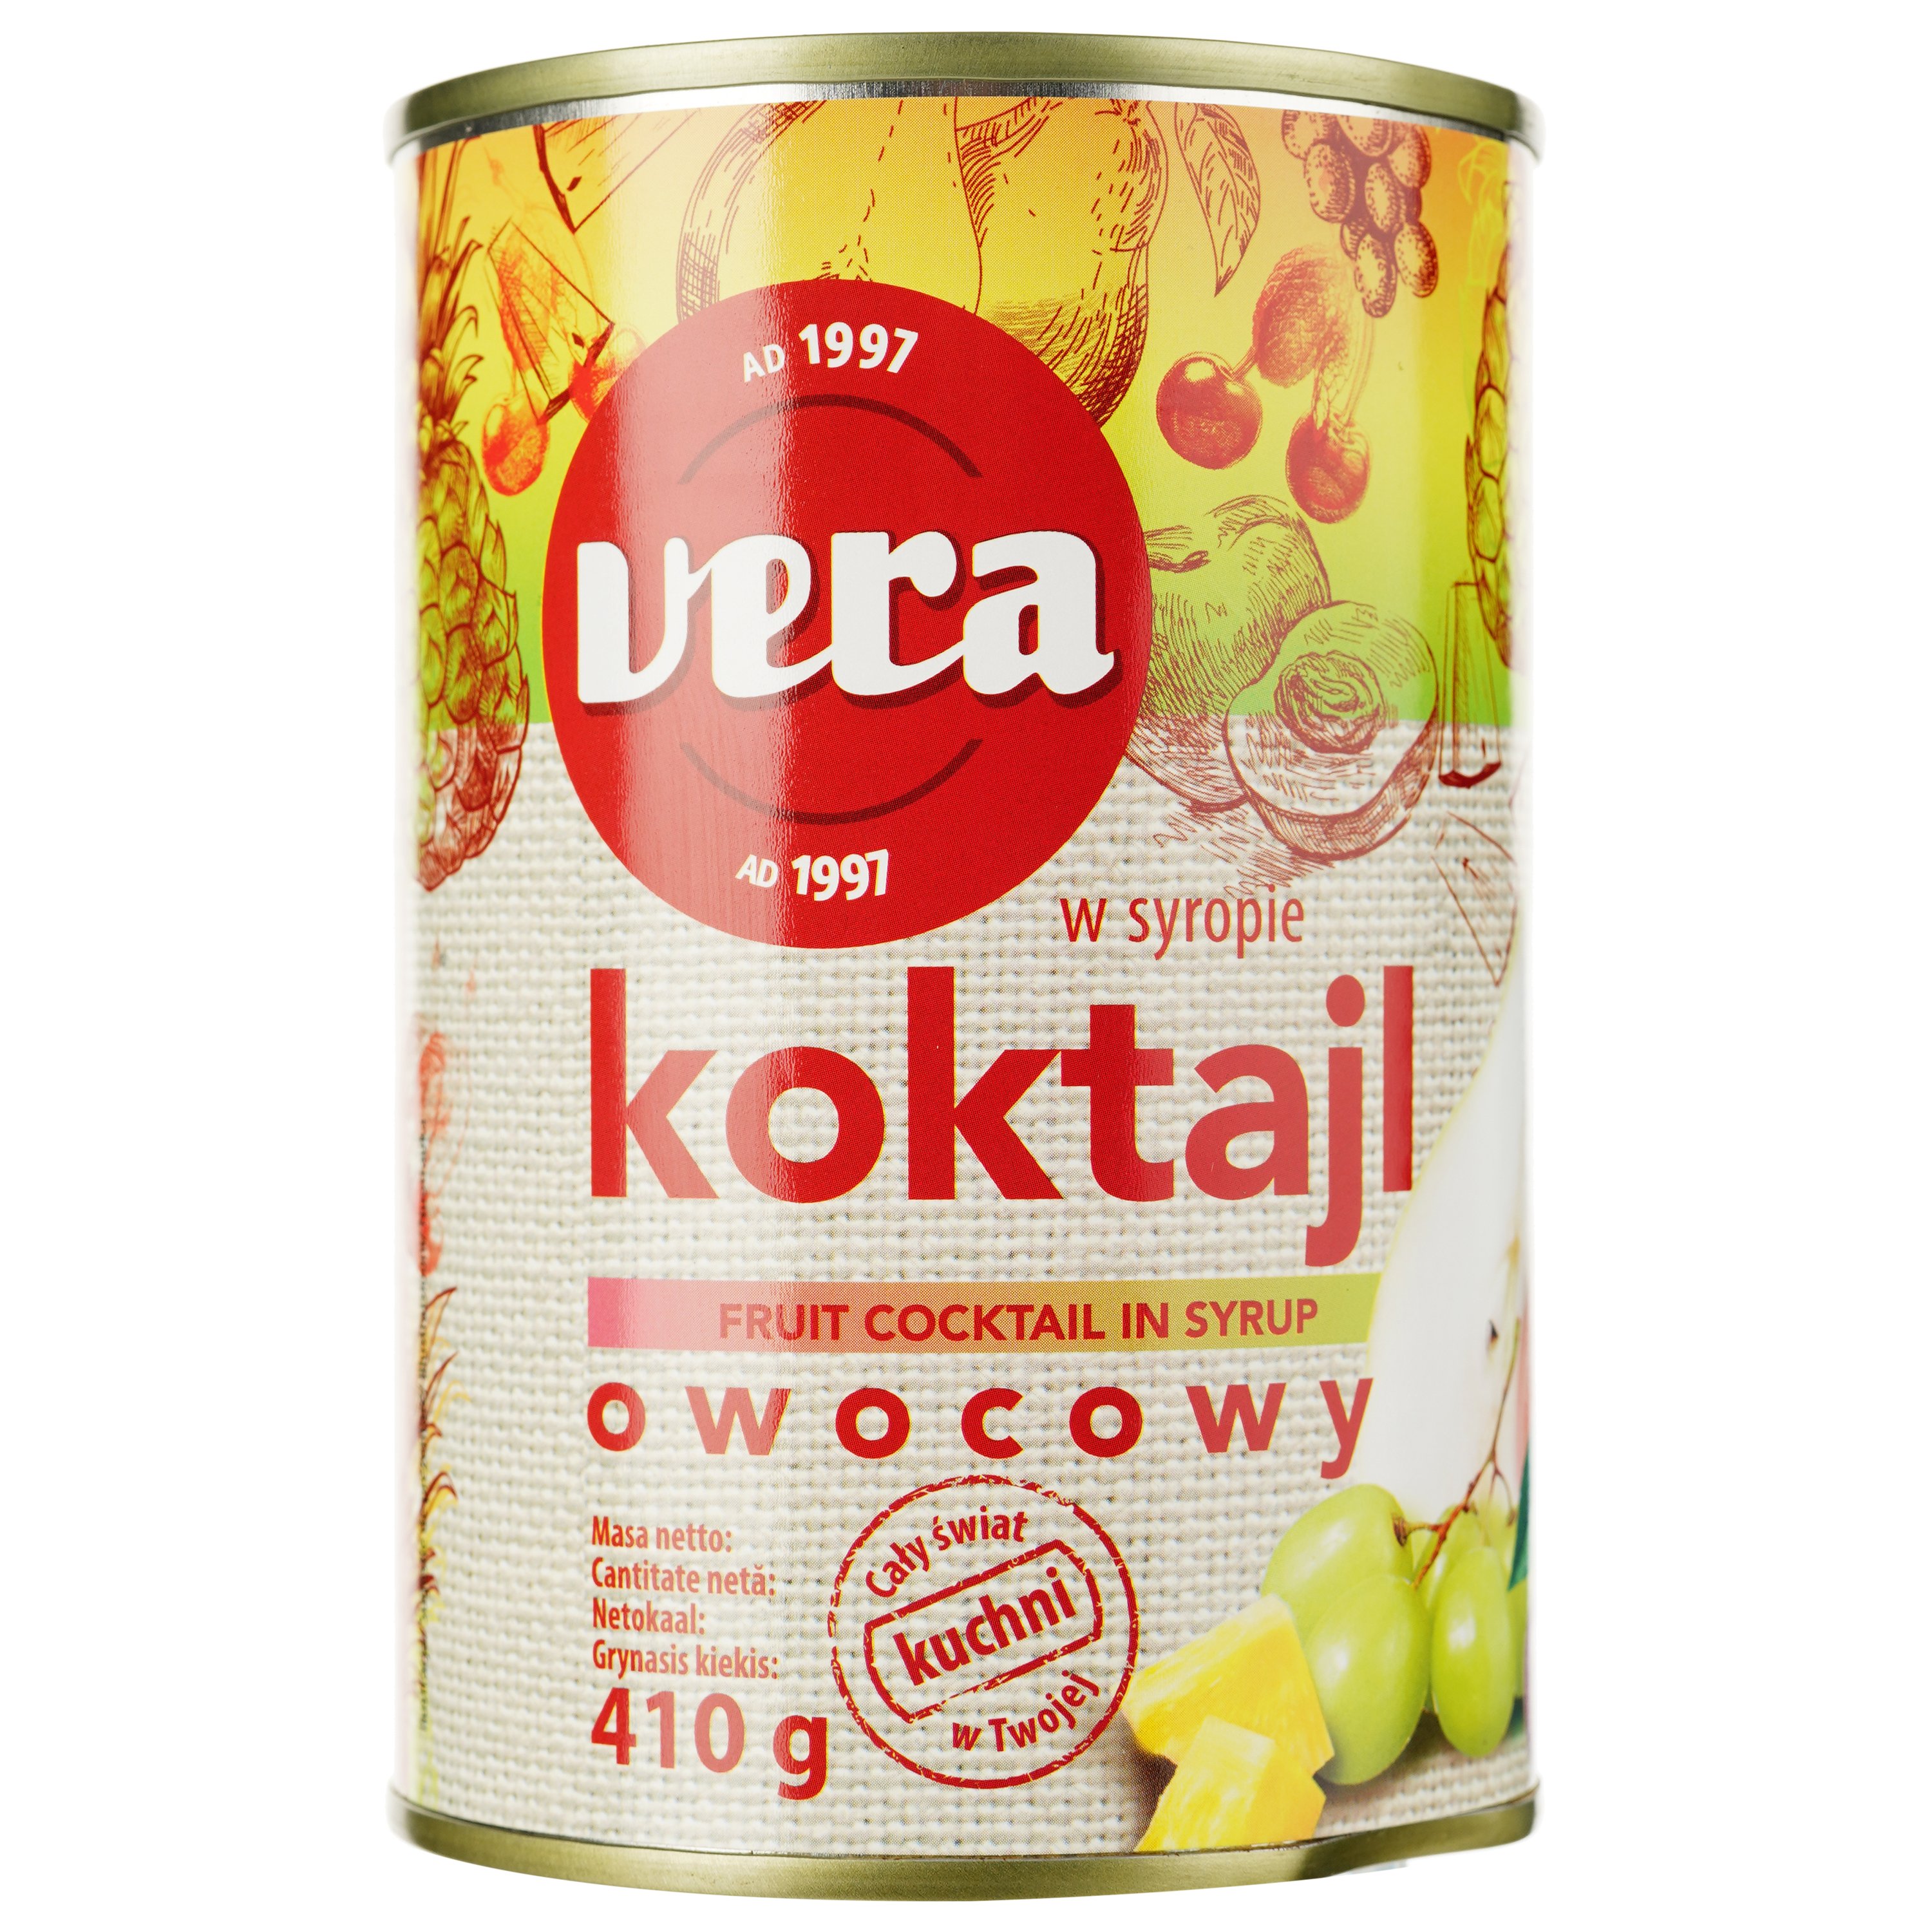 Коктейль Vera Koktajl Owocowy, фруктовый микс в сиропе, 410 г - фото 1